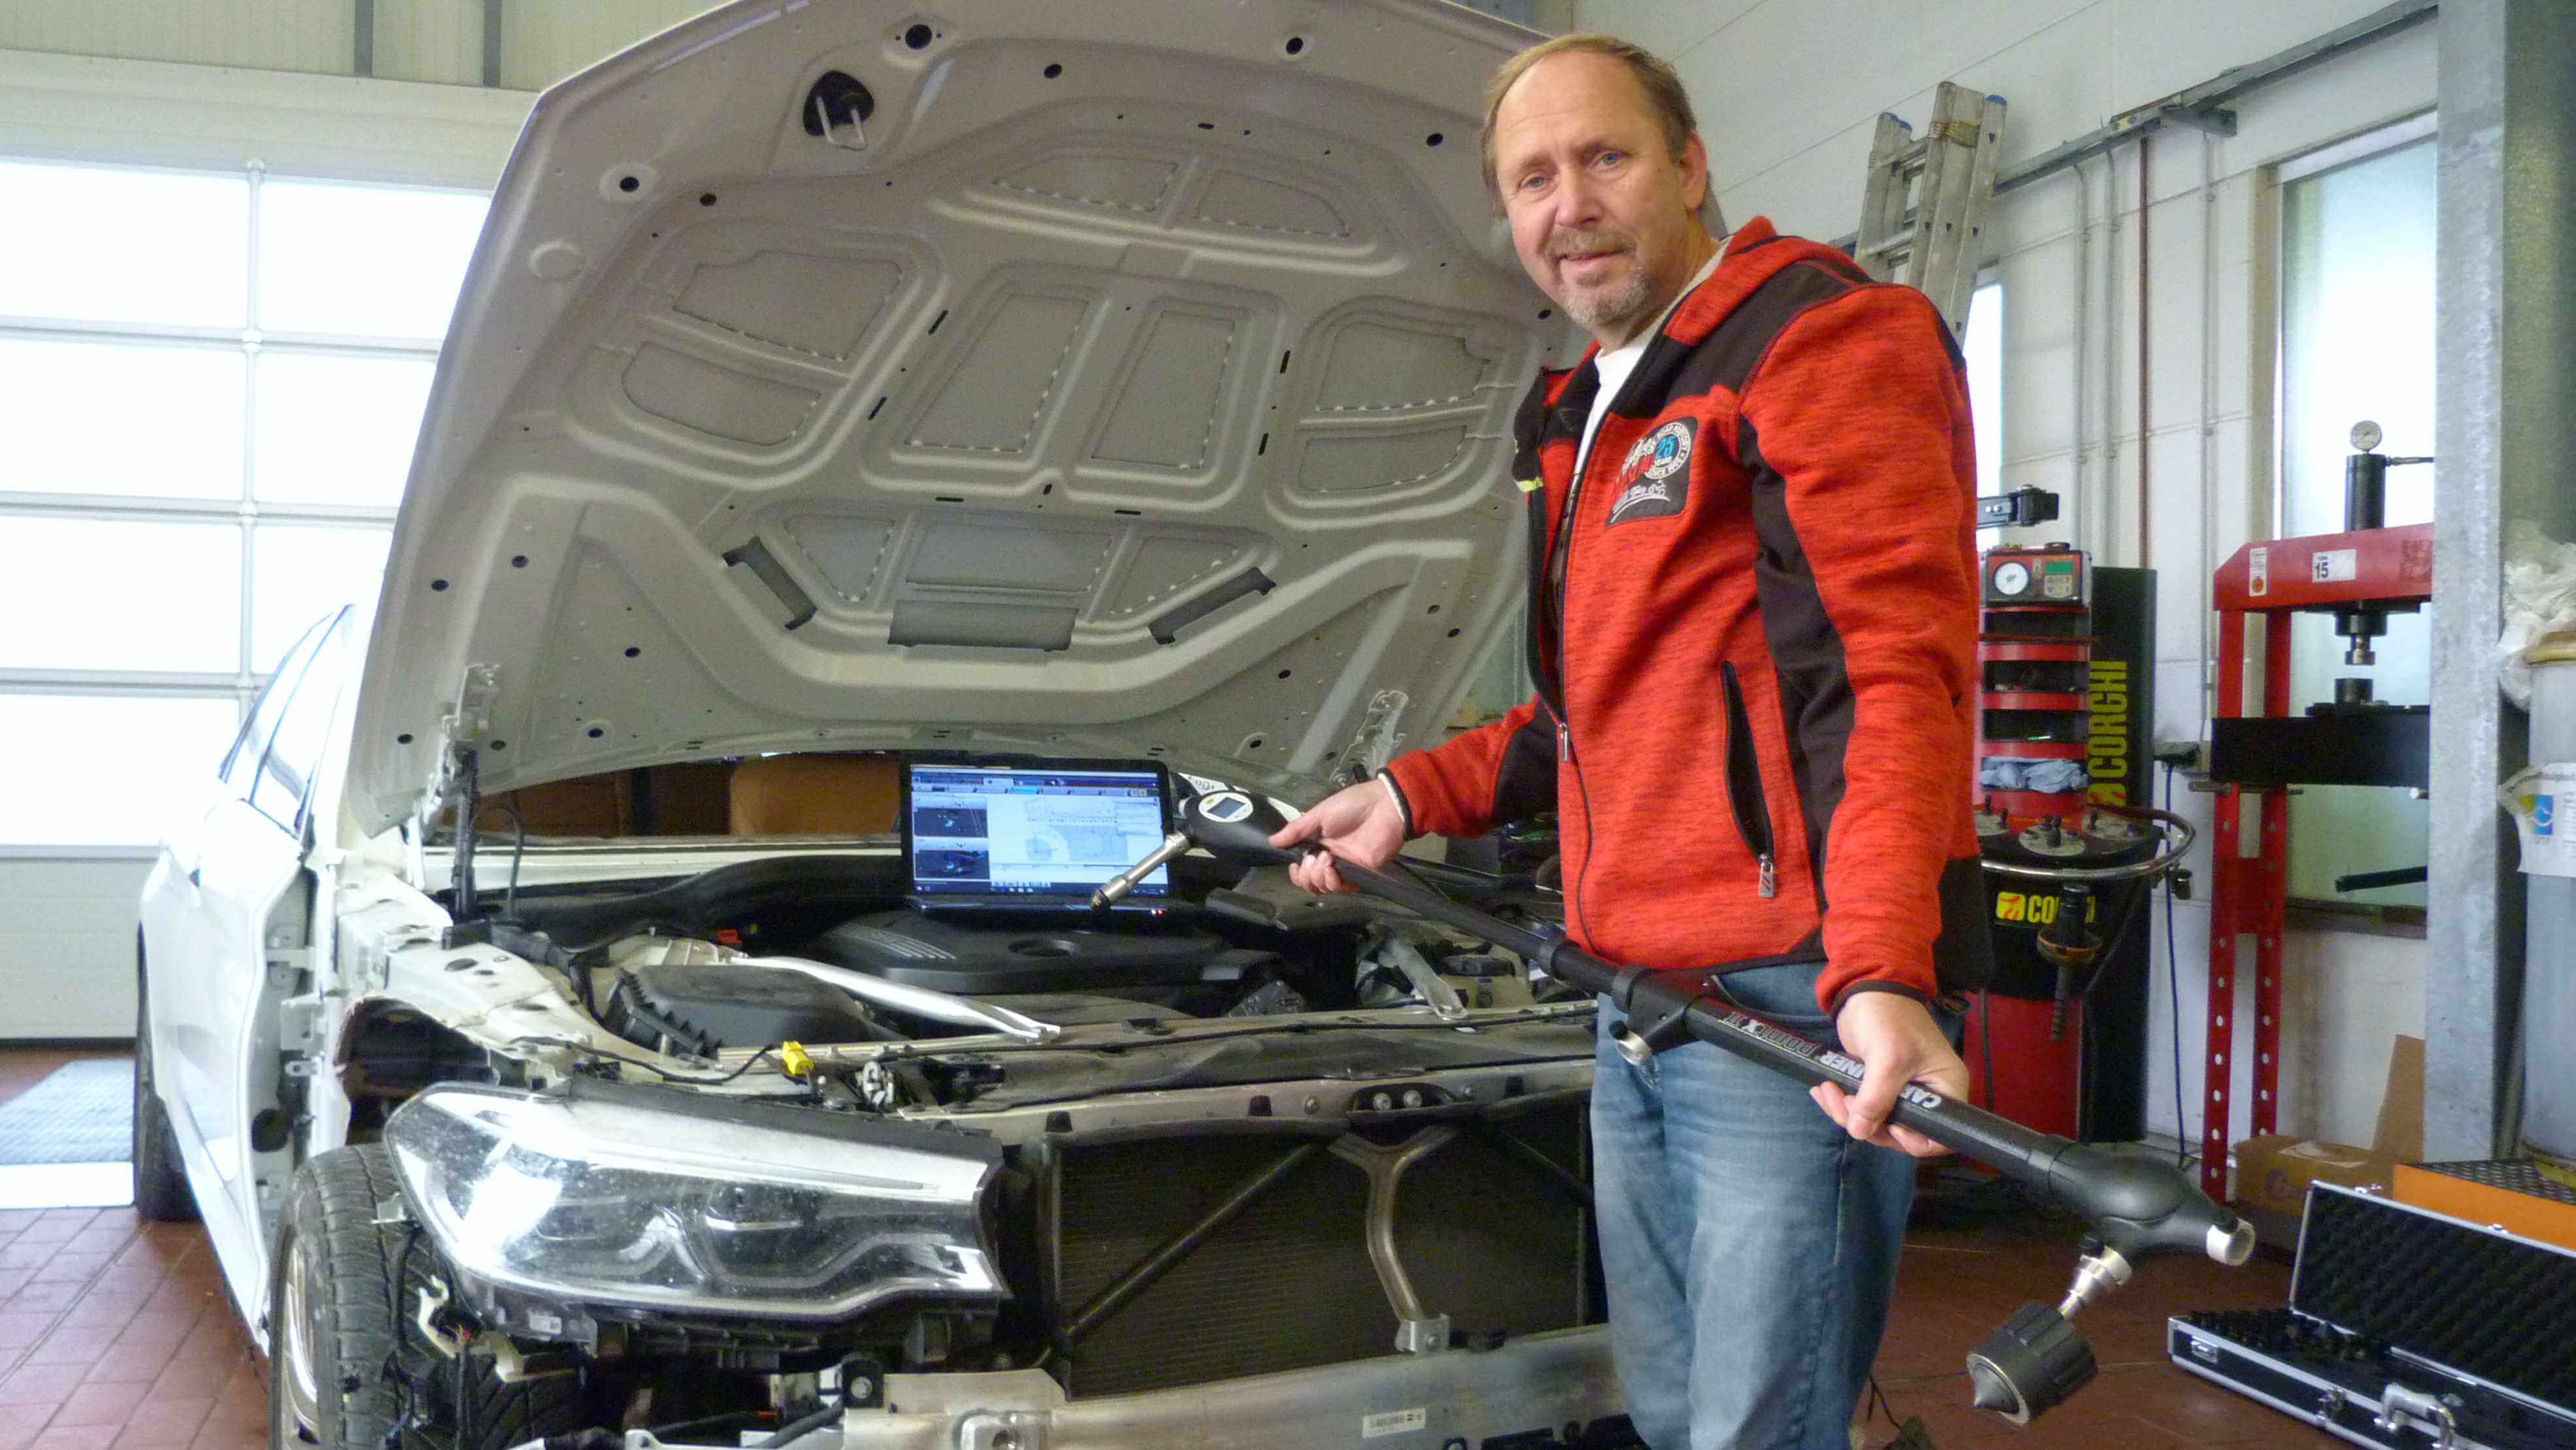 Kfz-Gutachter Andreas Henschel an einem zu vermessenden Fahrzeug